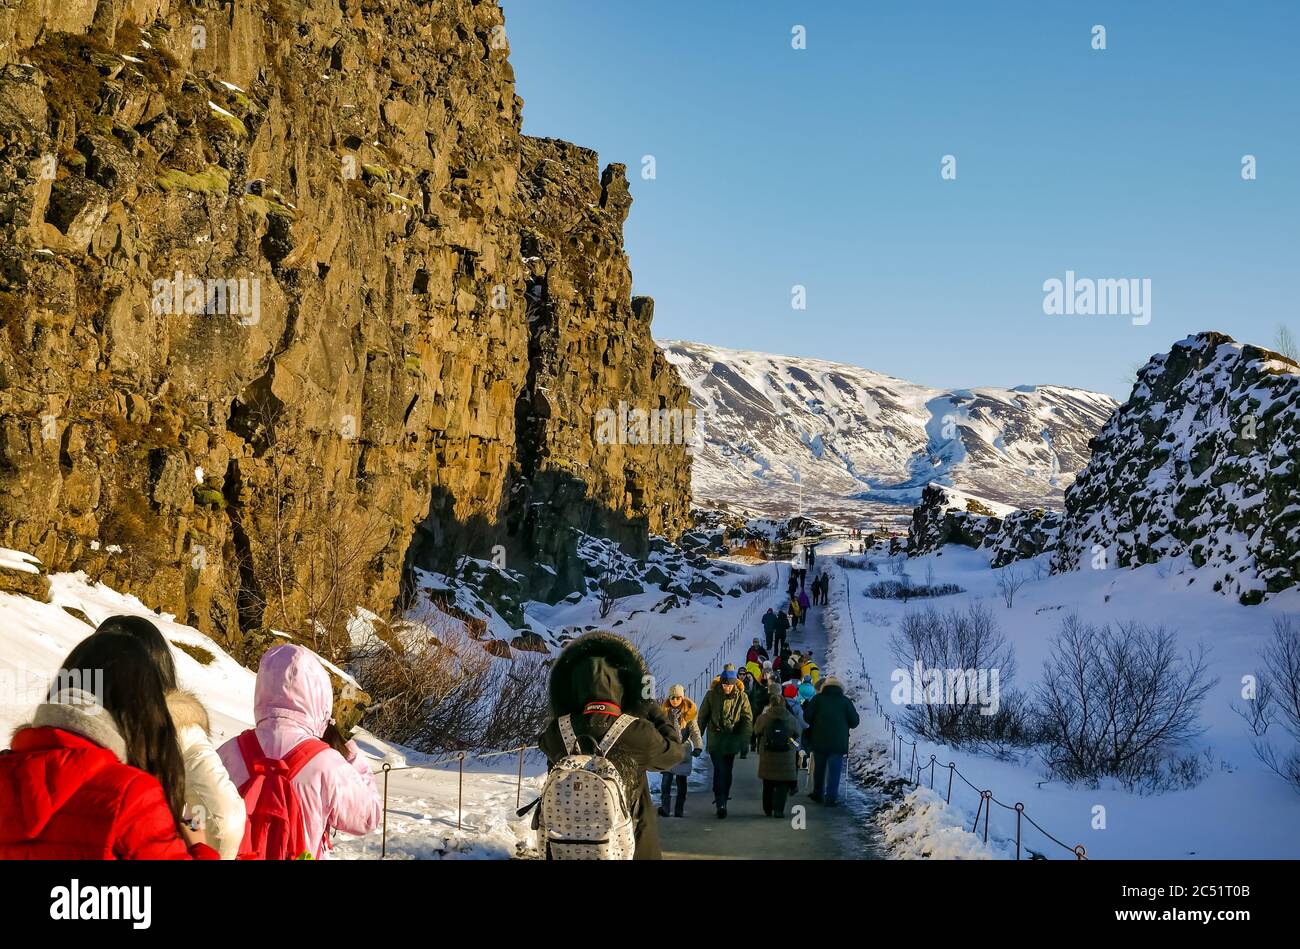 Touristes dans la crête du milieu-Atlantique plaque frontière de faille gorge avec les touristes en hiver, cercle d'or, Islande Banque D'Images